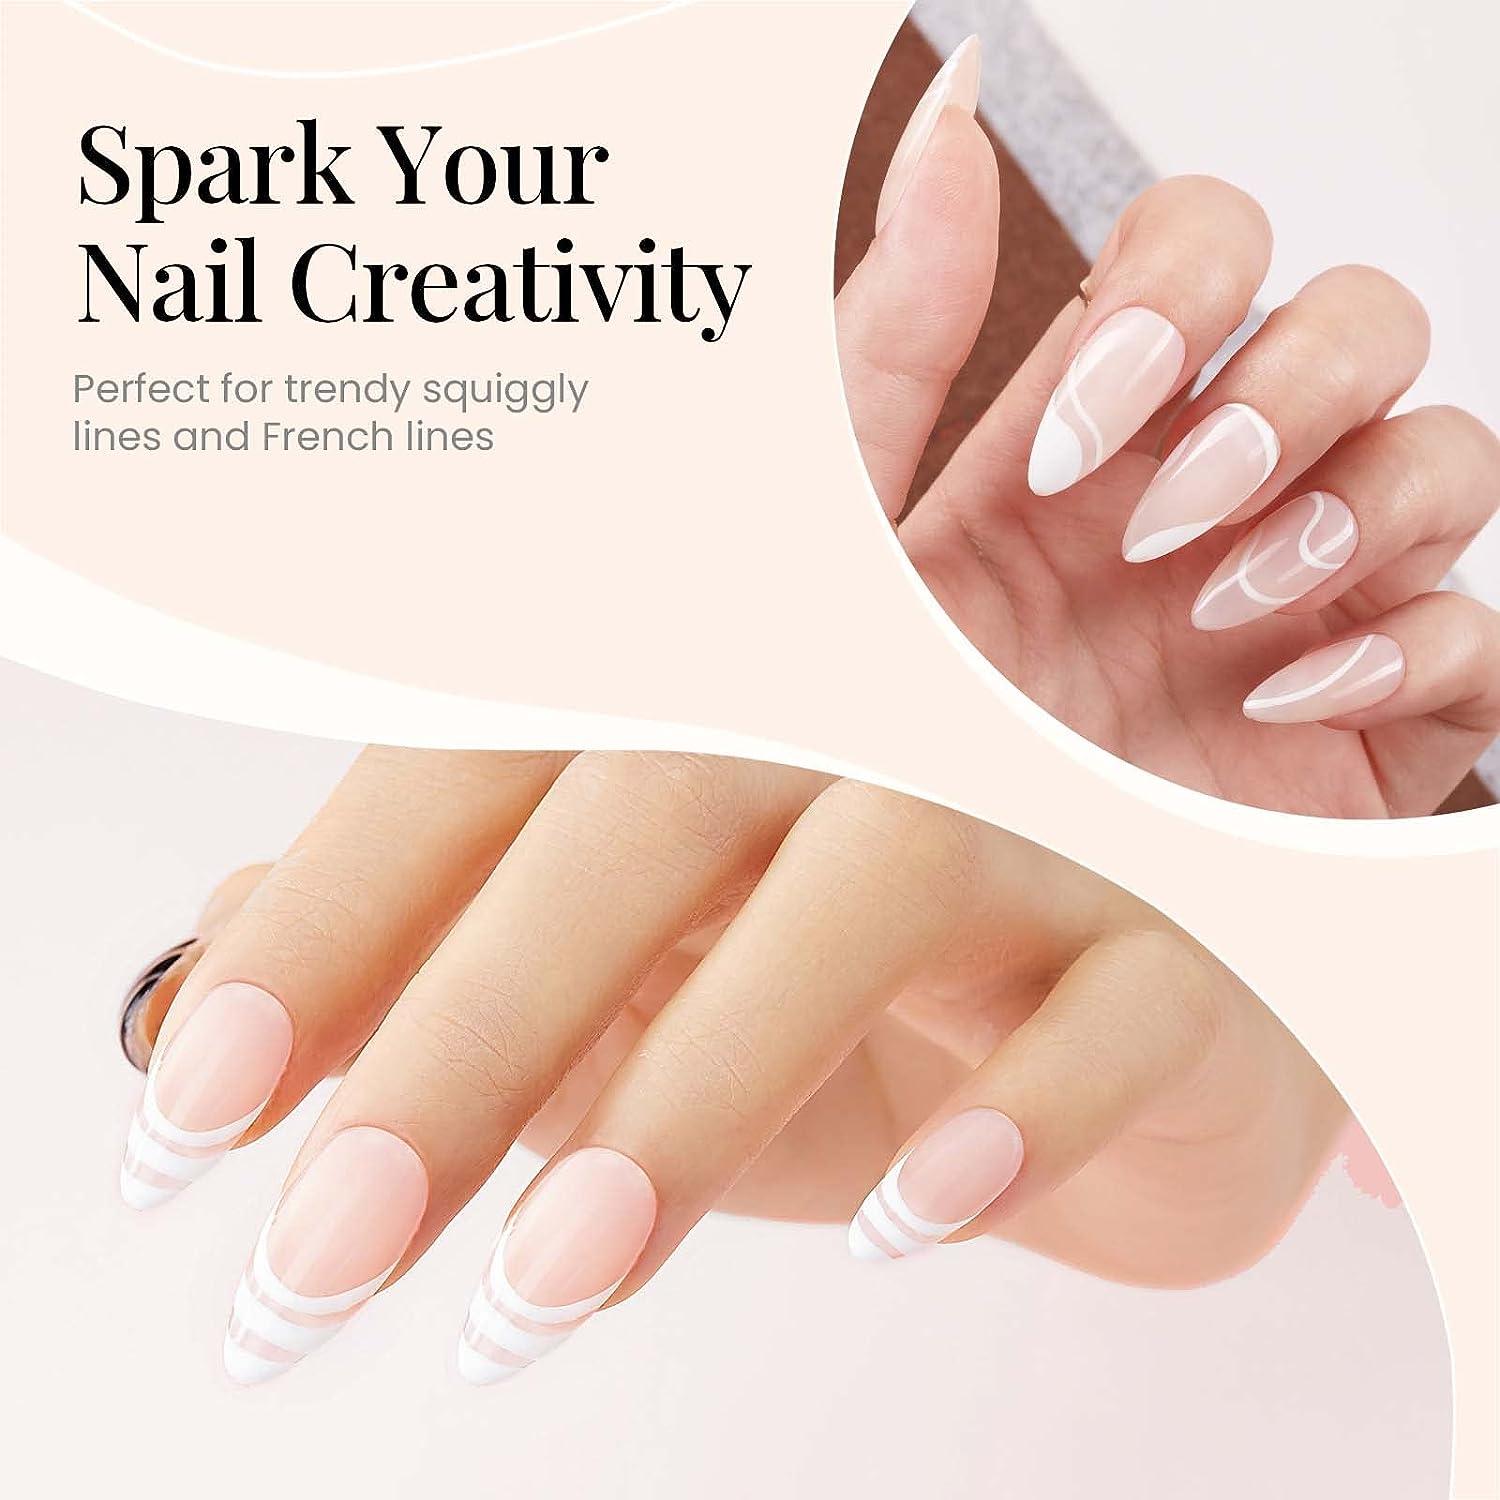 jun | Nail polish combinations, Fall nail art designs, Dots nails